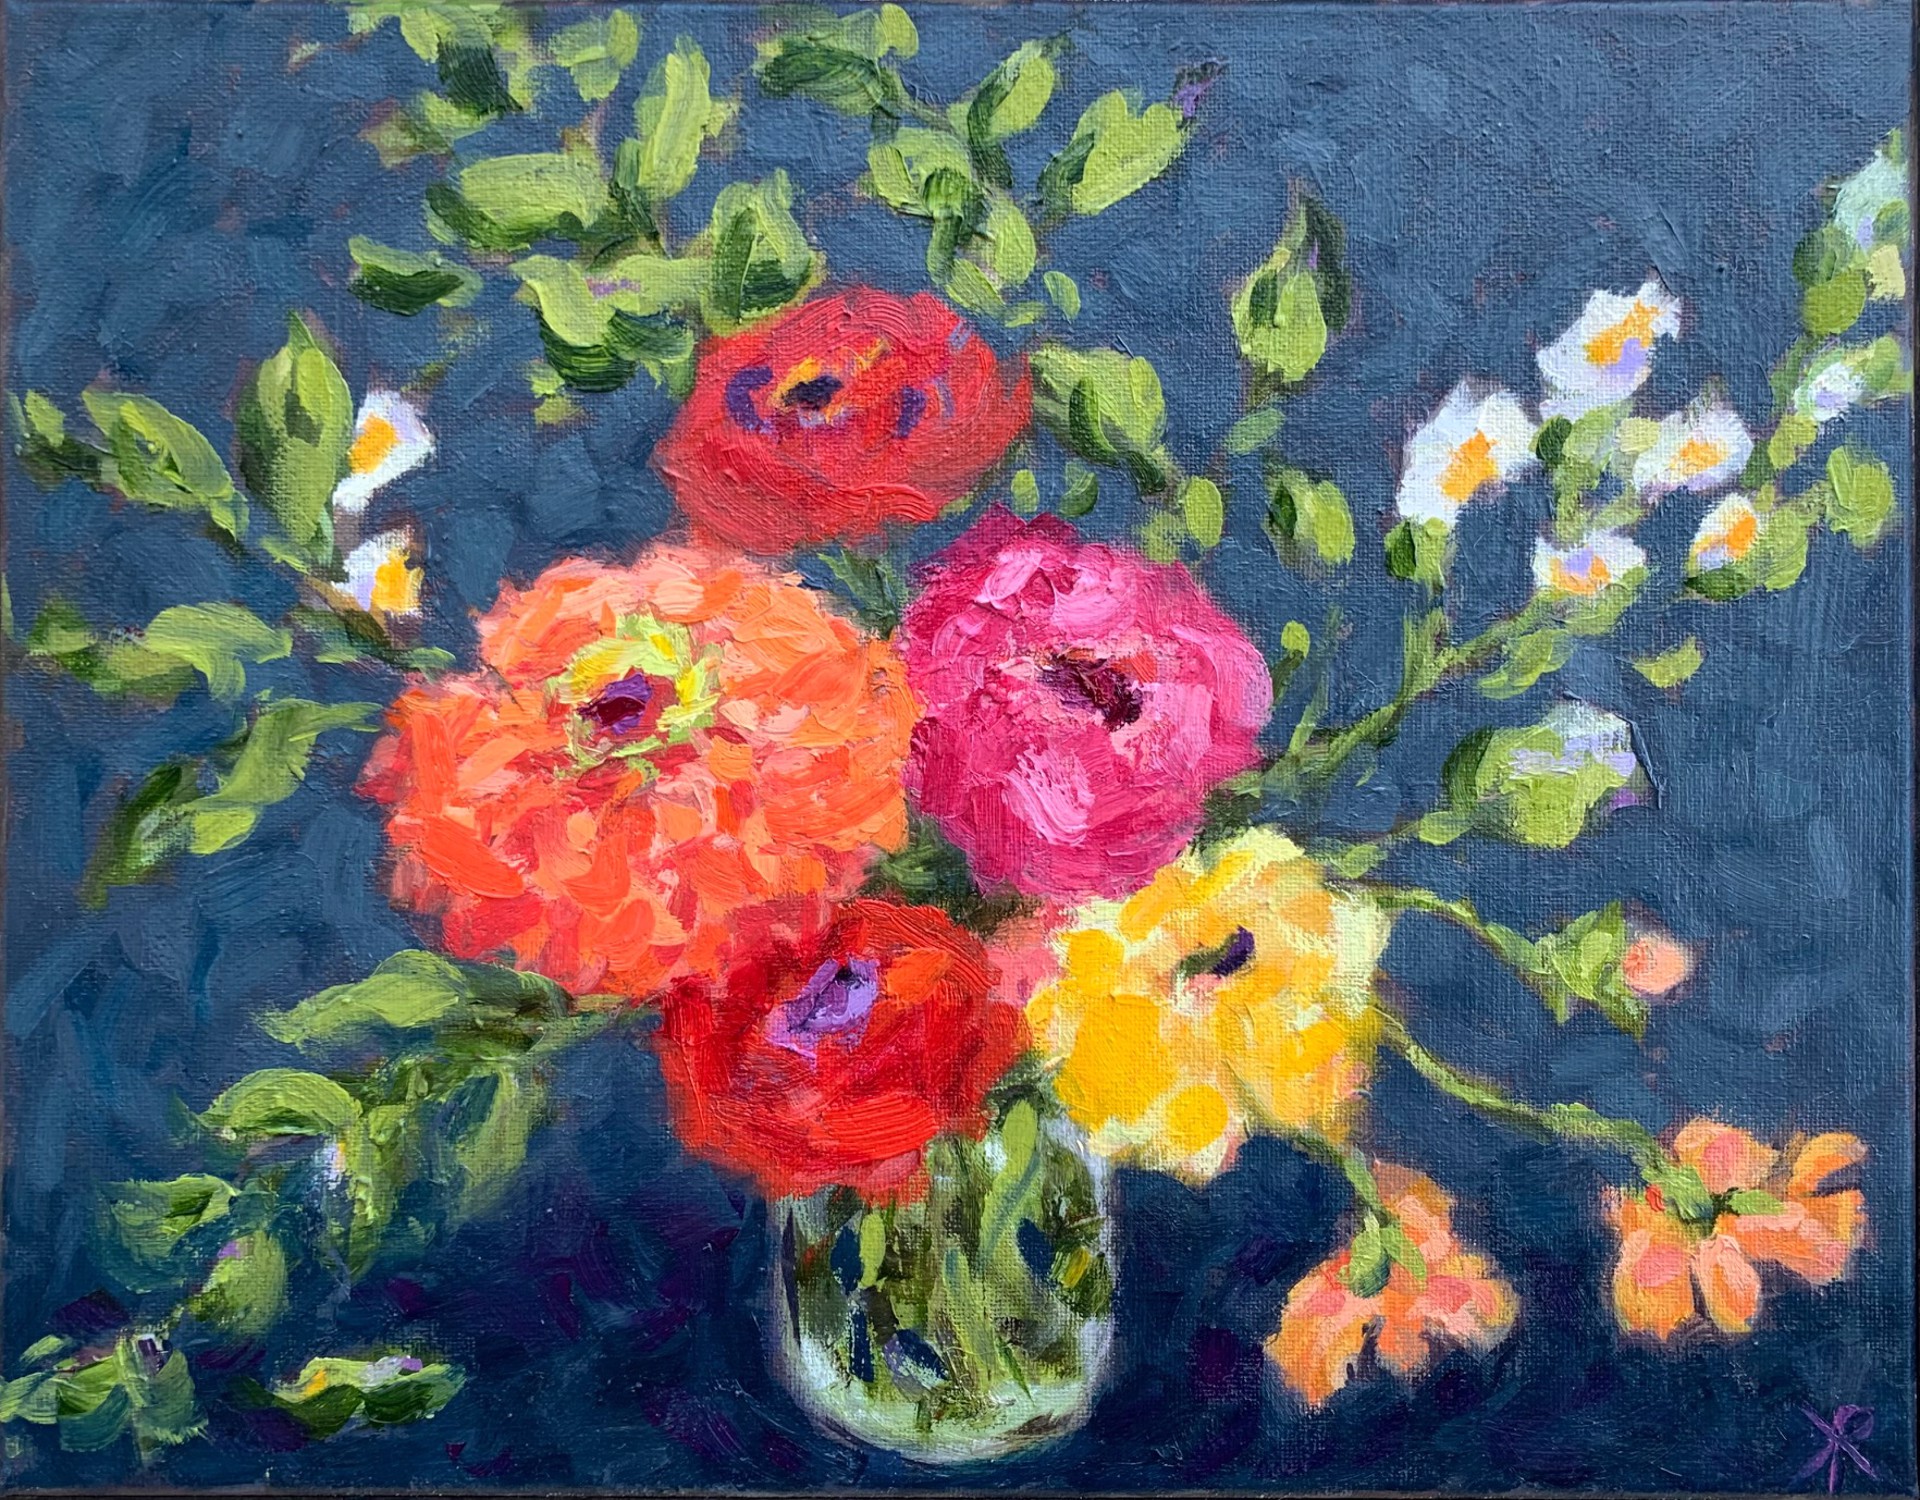 Joyful Blooms by Kirsten Rose